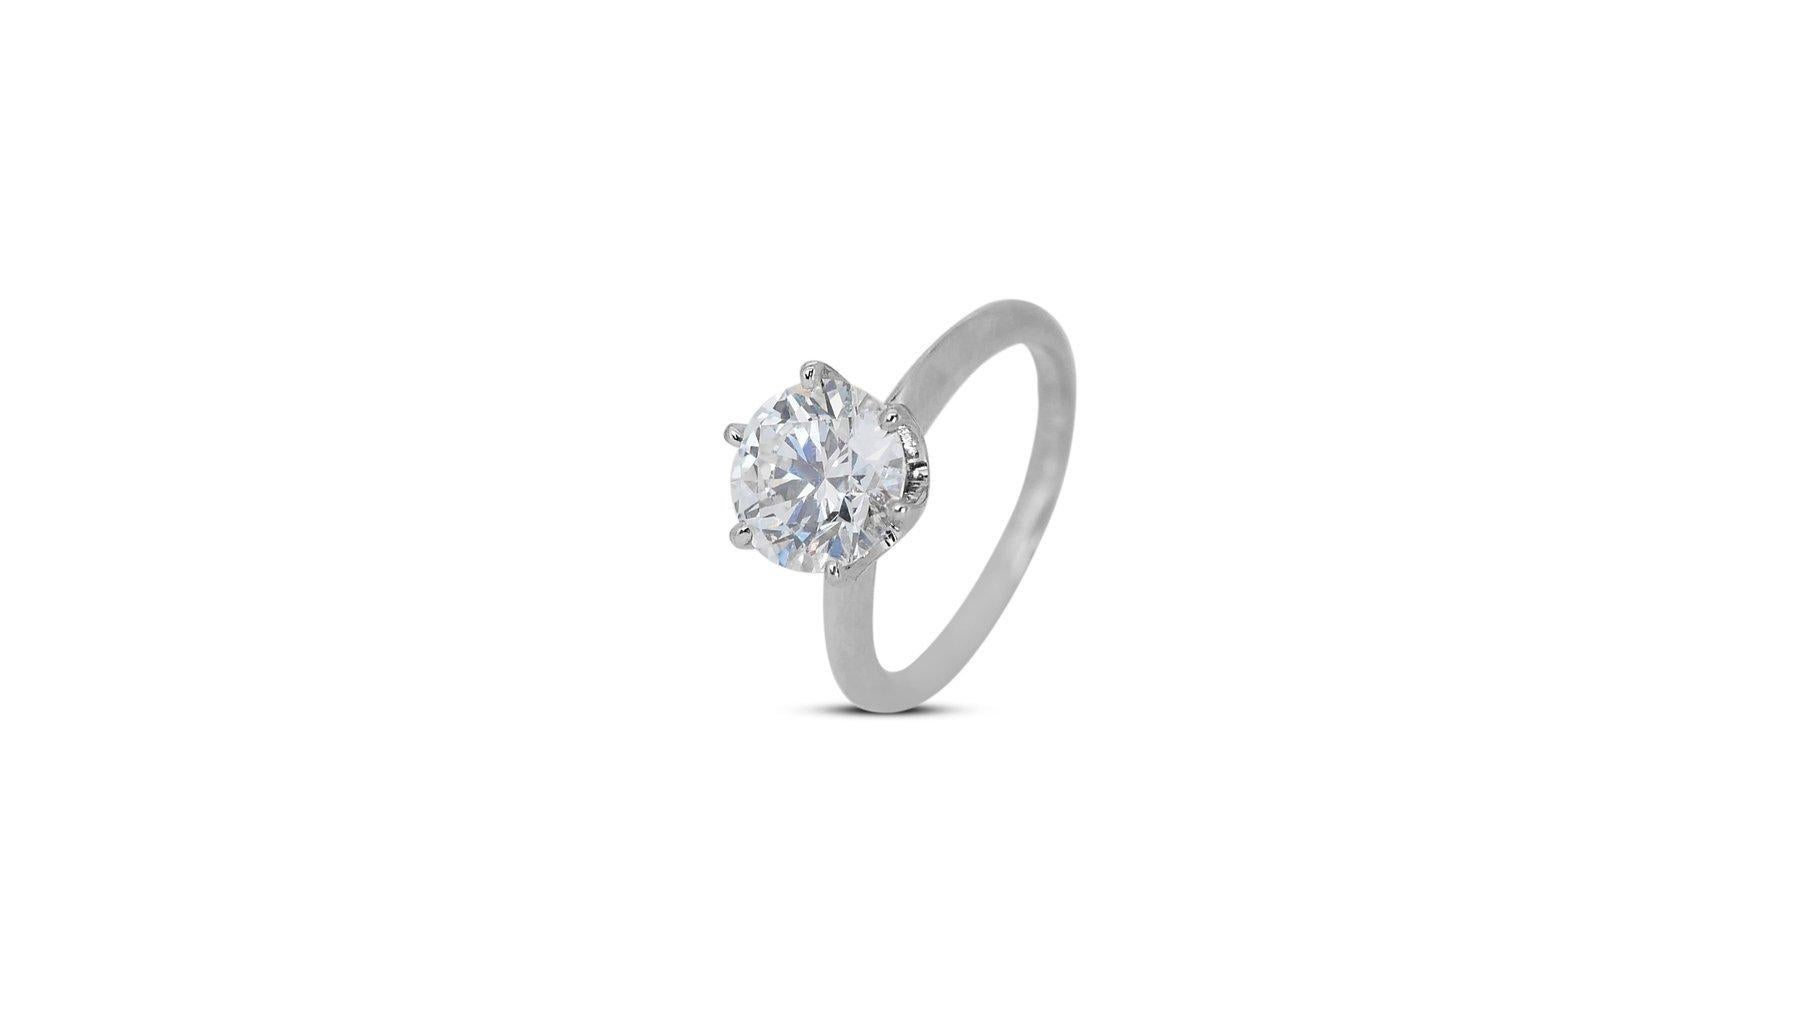 Timeless 3.09ct Diamond Solitaire Ring in 18k White Gold - GIA Certified (bague solitaire en or blanc 18 carats)

Faites l'expérience d'une élégance inégalée avec cette bague solitaire en or blanc 18k, ornée d'un magnifique diamant de 3,09 carats de